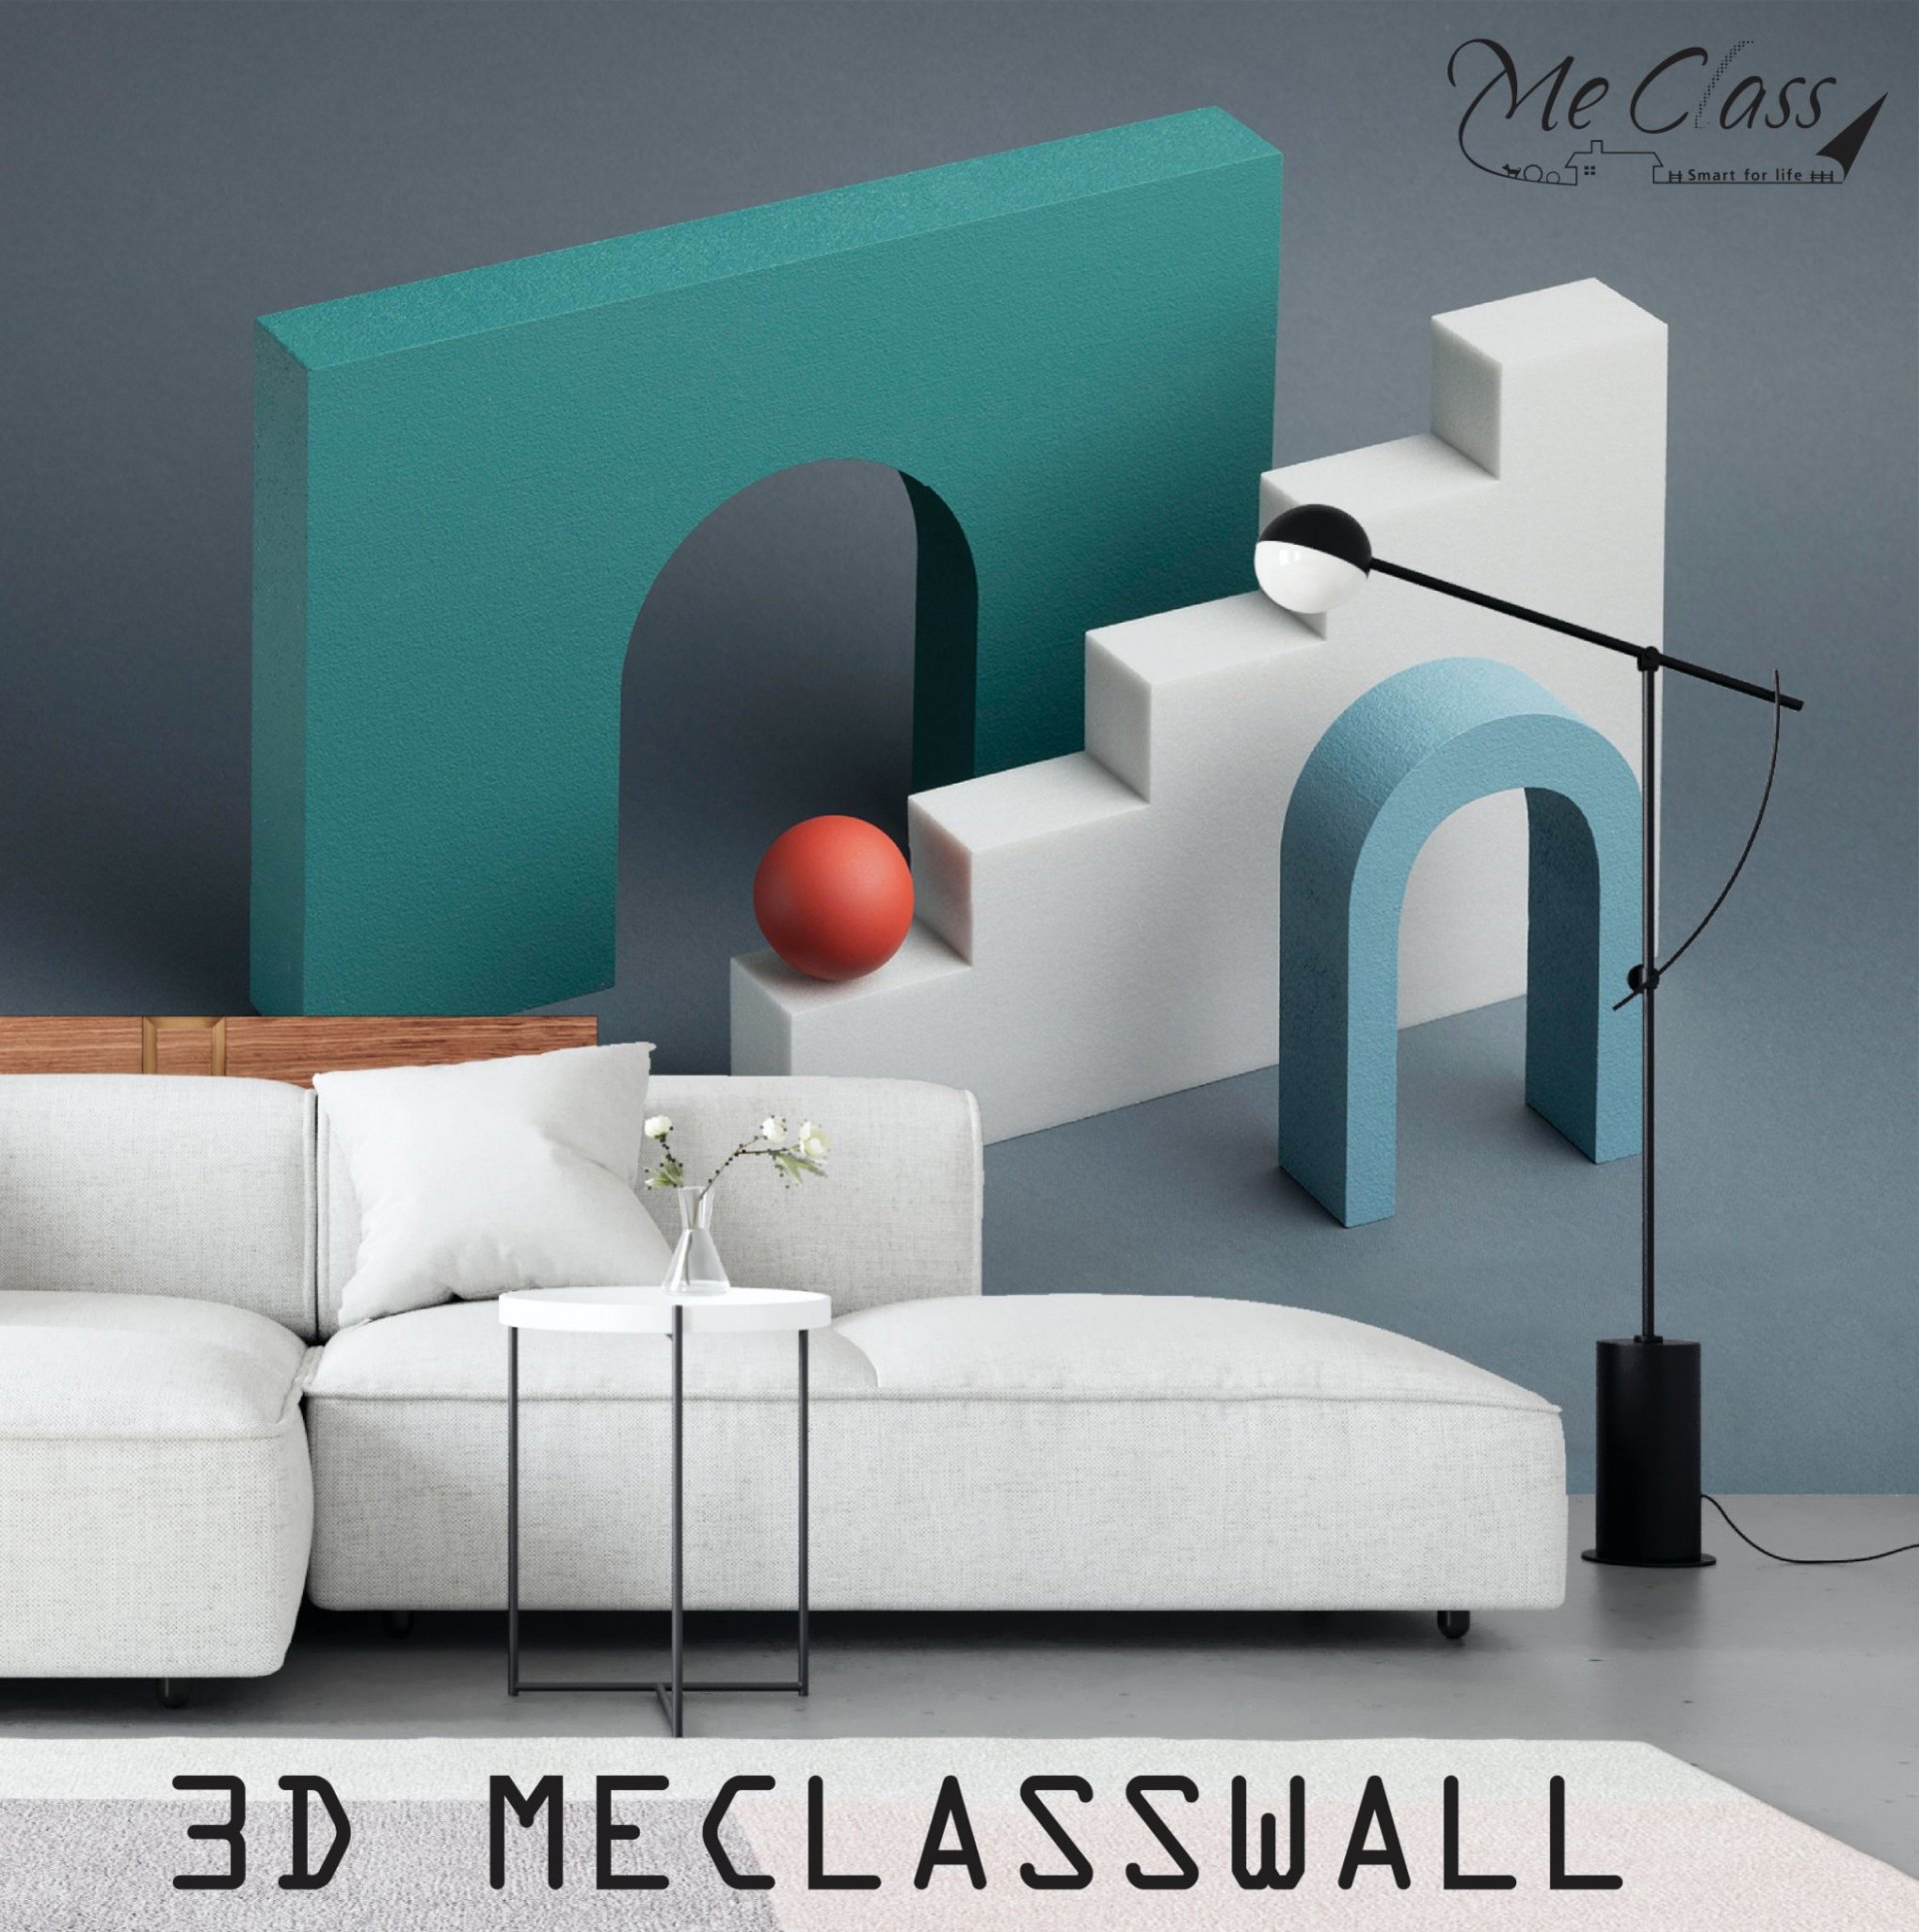 3D MECLASSWALL